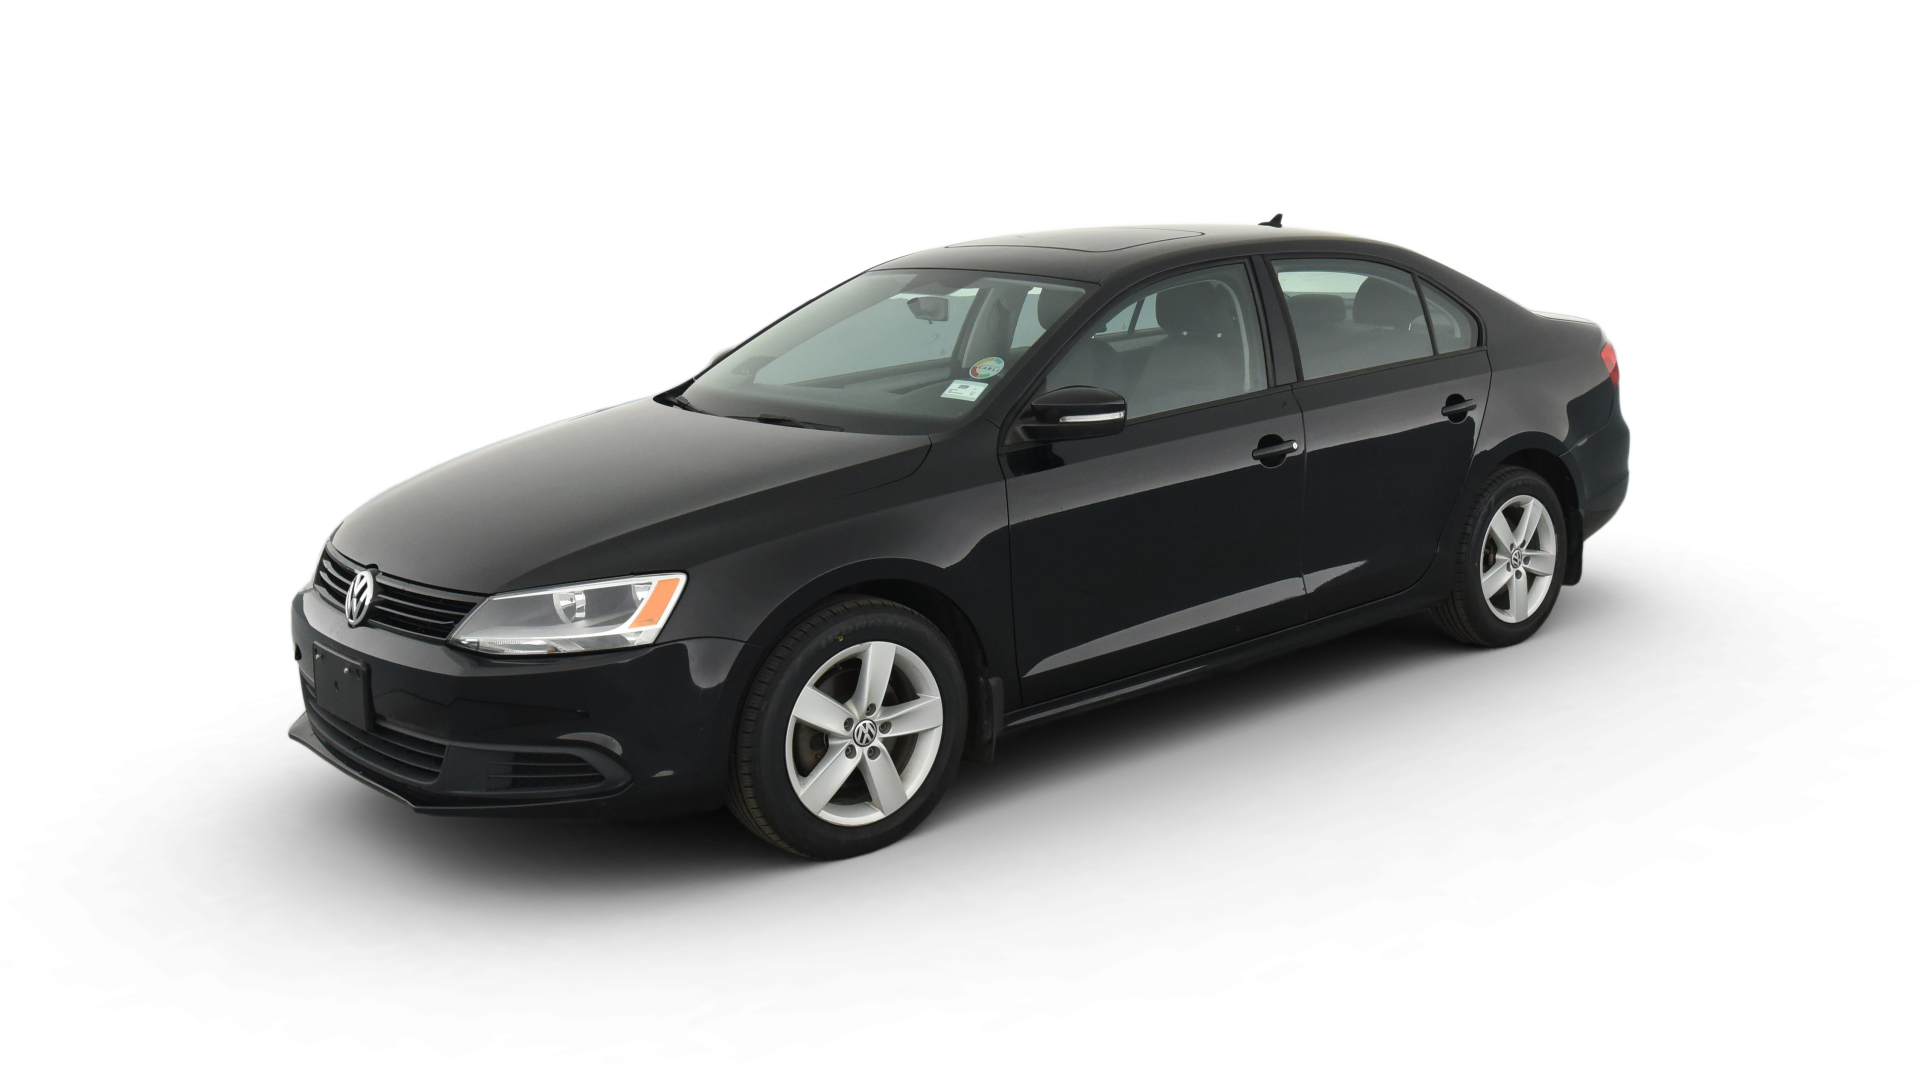 Volkswagen Jetta model image.